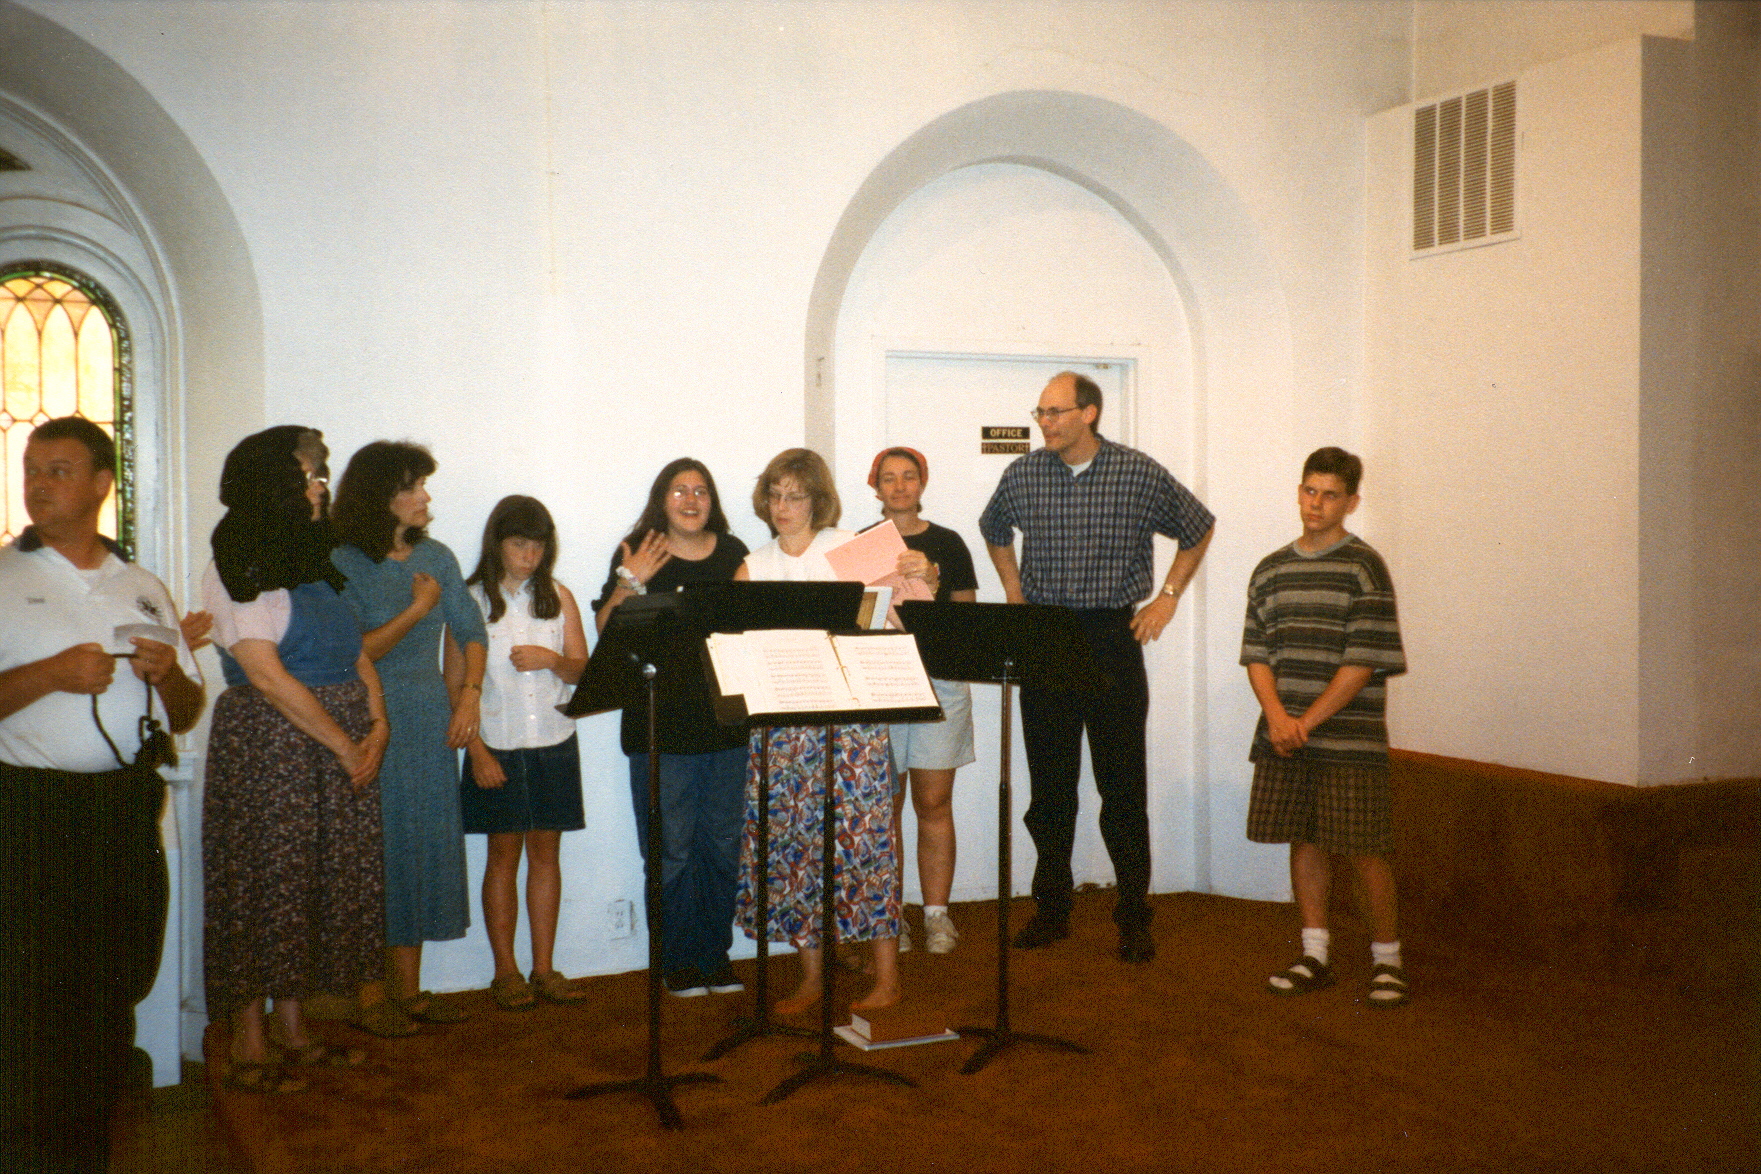 The Choir